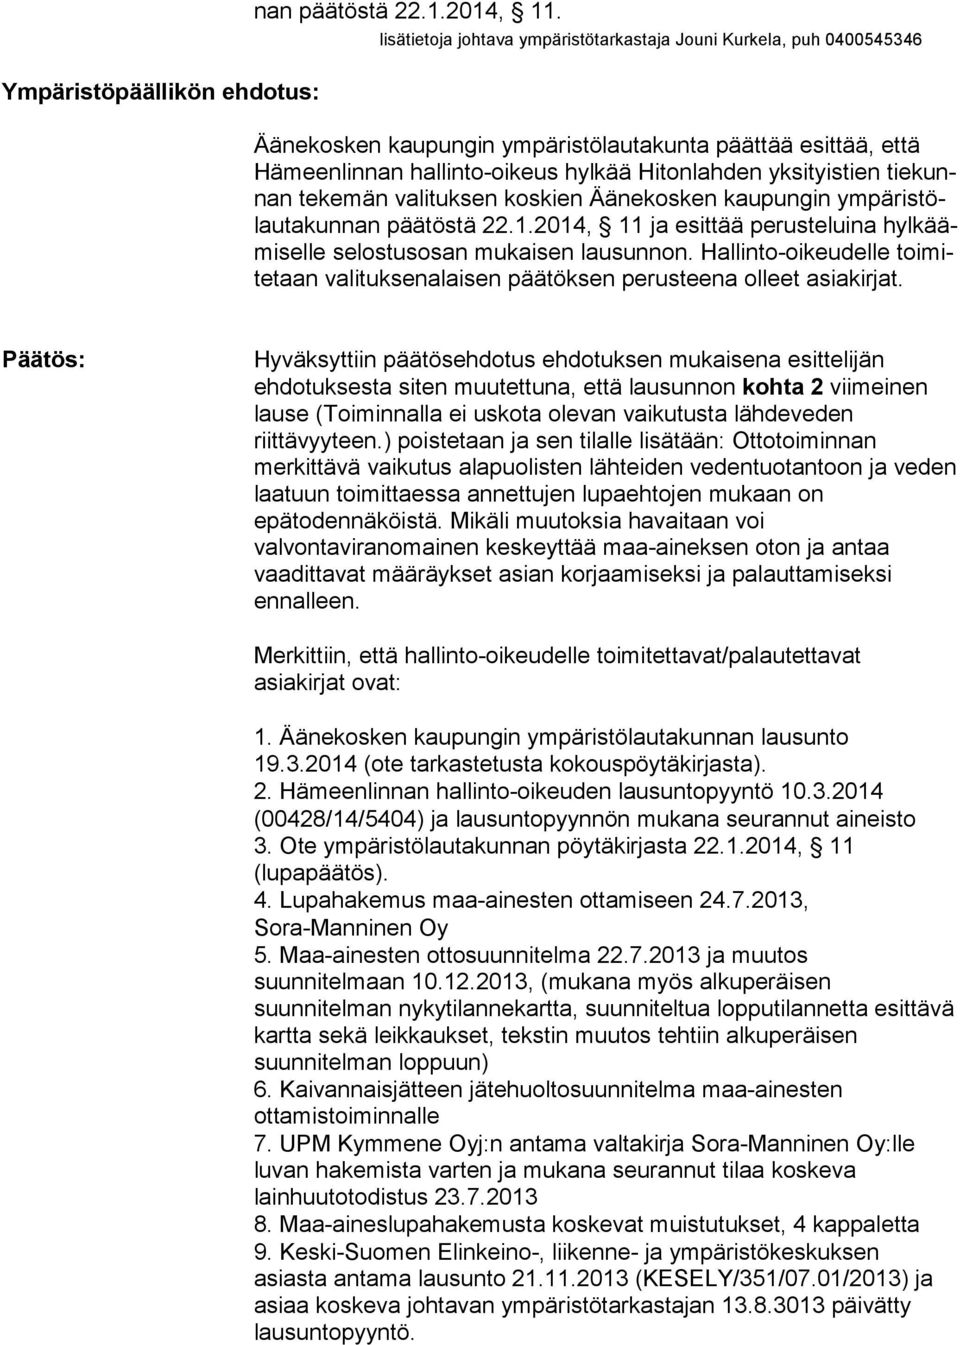 tiekunnan tekemän valituksen koskien Äänekosken kaupungin ympäristölautakunnan päätöstä 22.1.2014, 11 ja esittää perusteluina hylkäämiselle selostusosan mukaisen lausunnon.